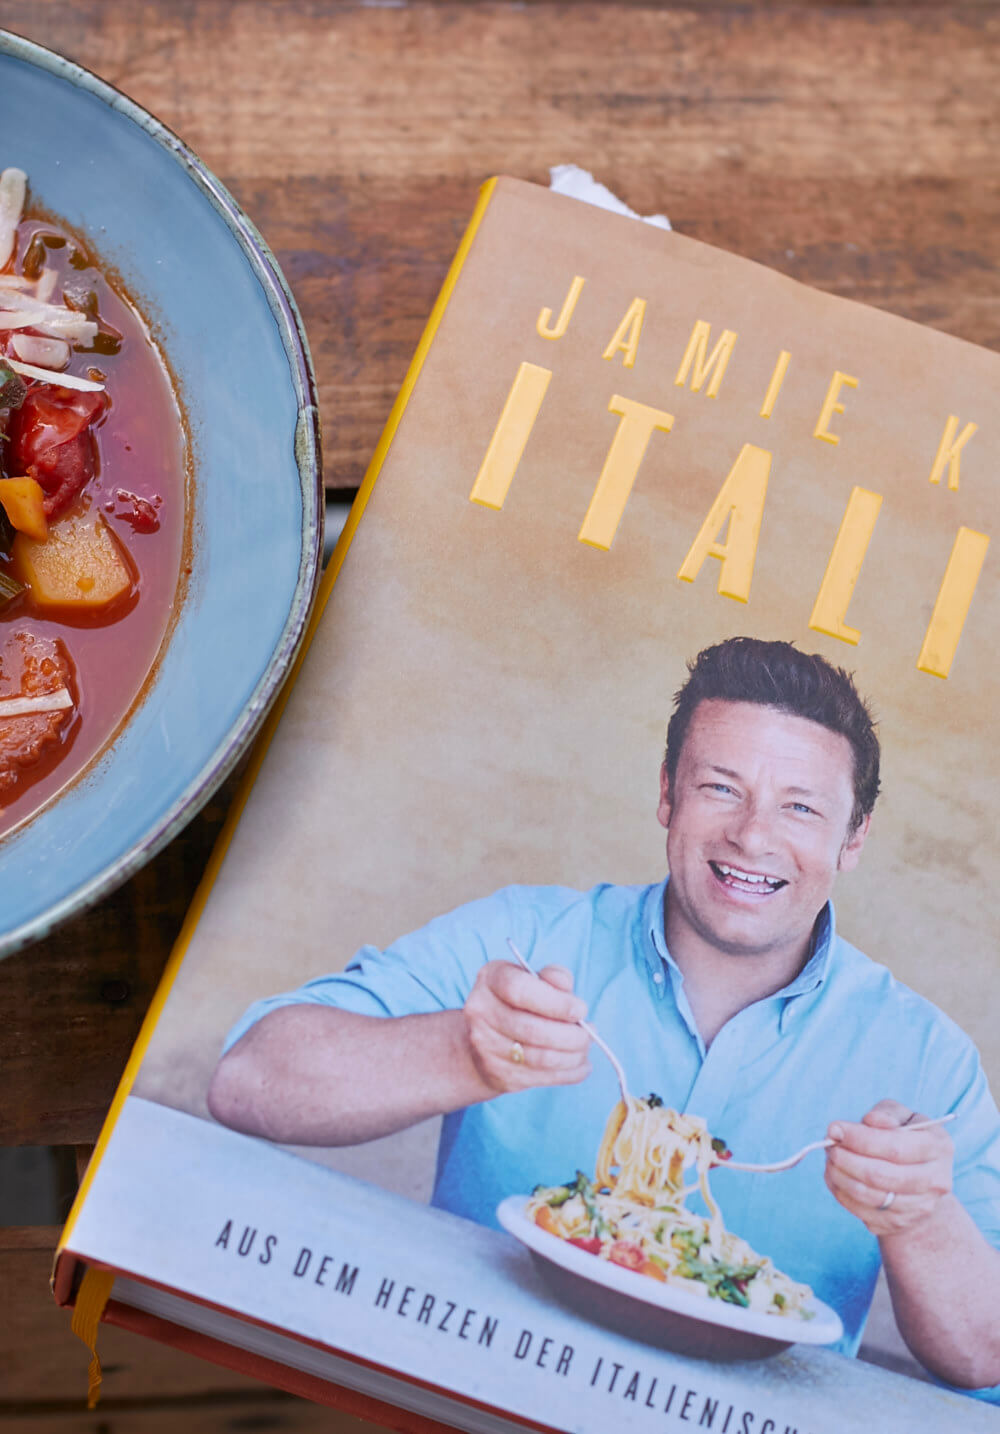 Nach meinem Liebling Jamie Oliver habe ich eine italienische Suppe nachgekocht